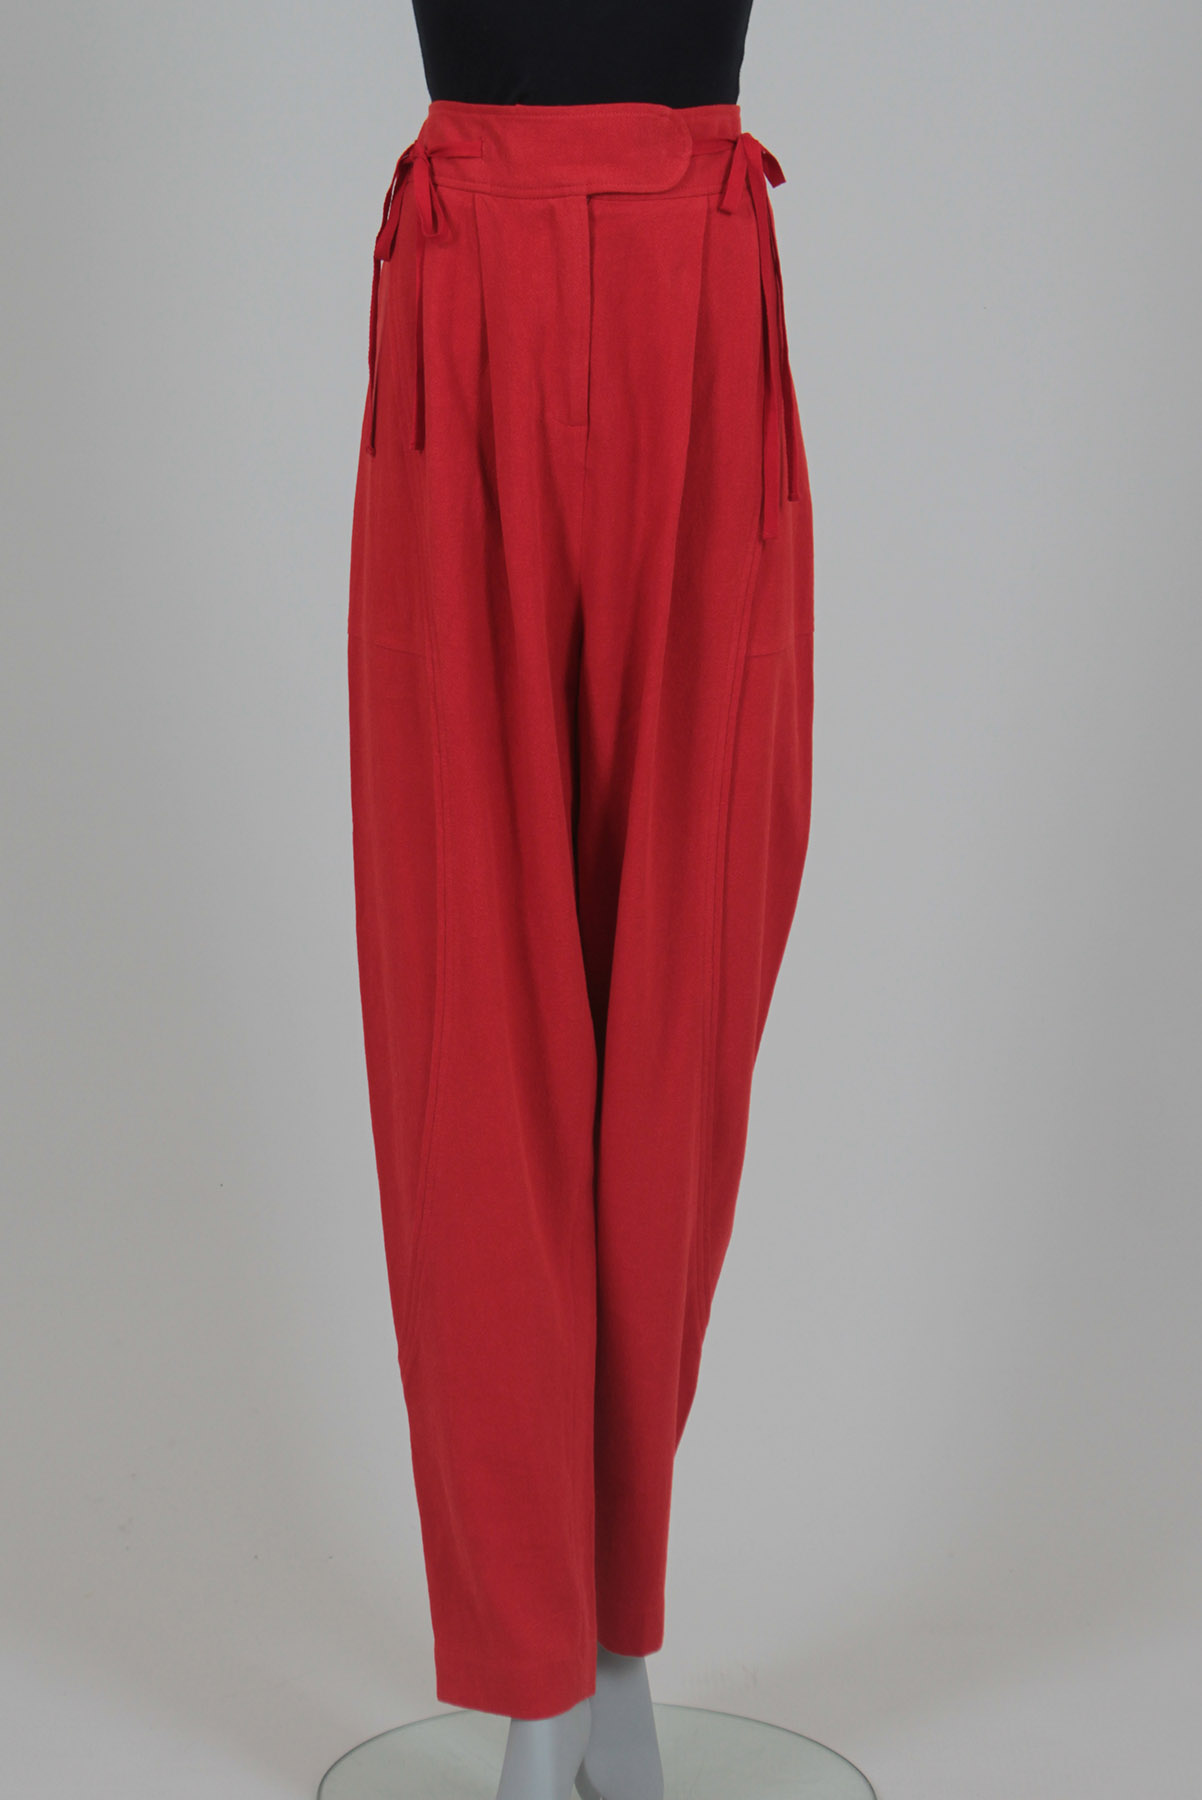 Calça A. Niemeyer Pantalona Vermelho